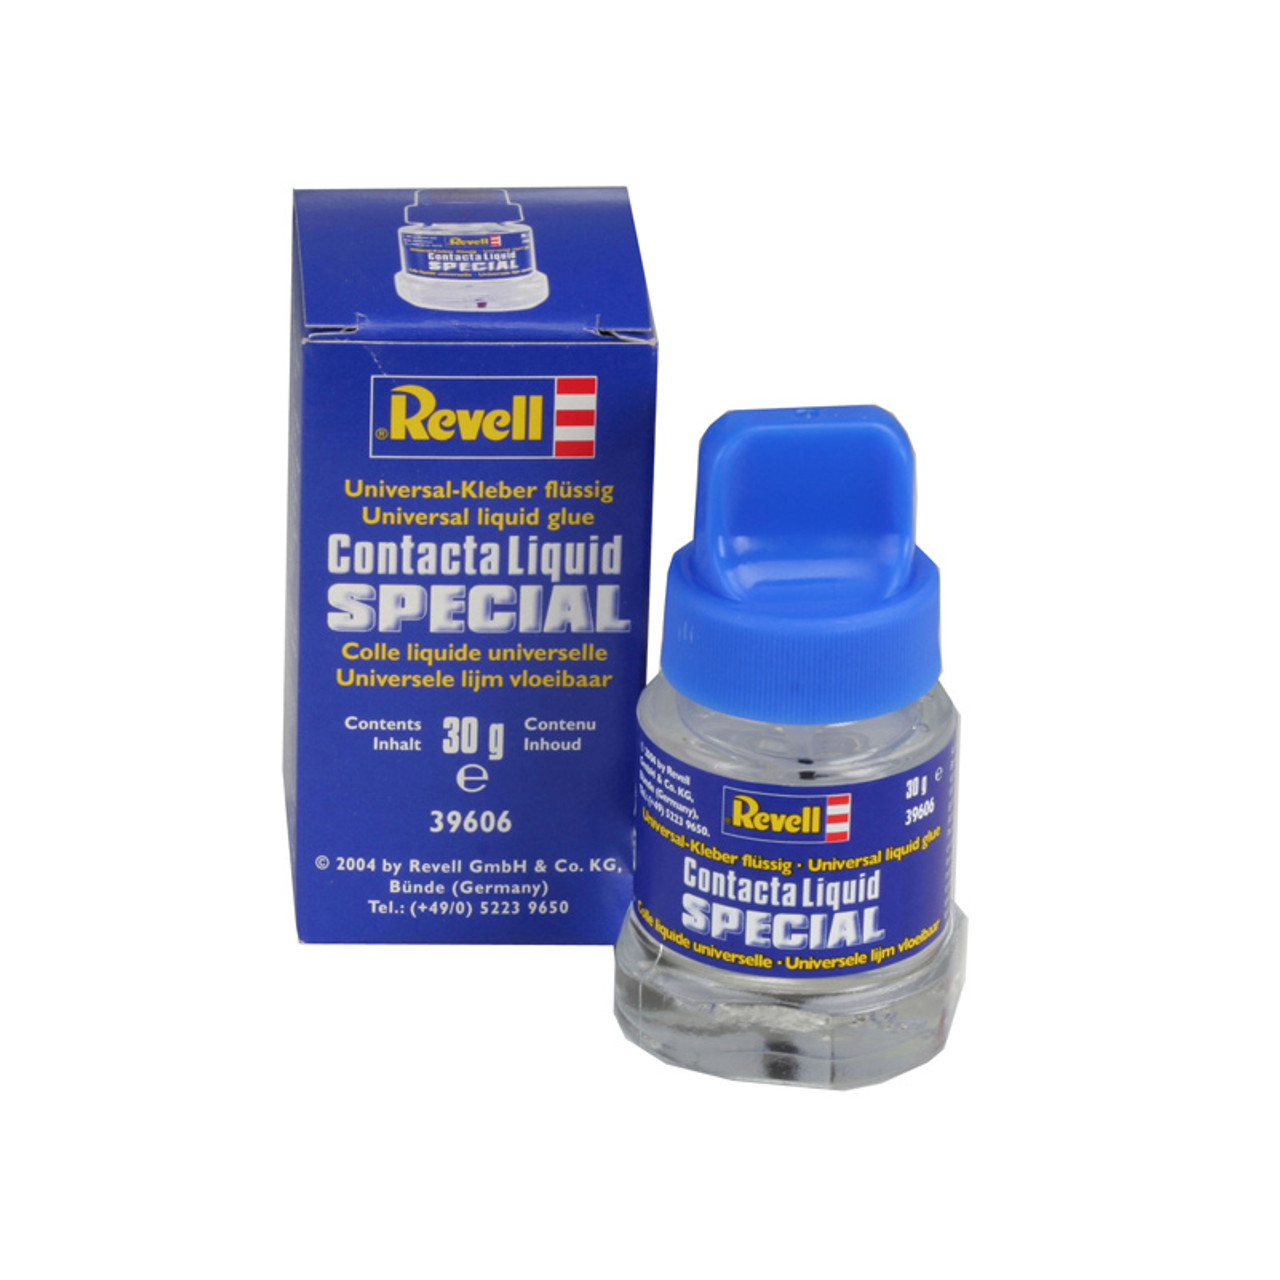 Revell Contacta Liquid - Special